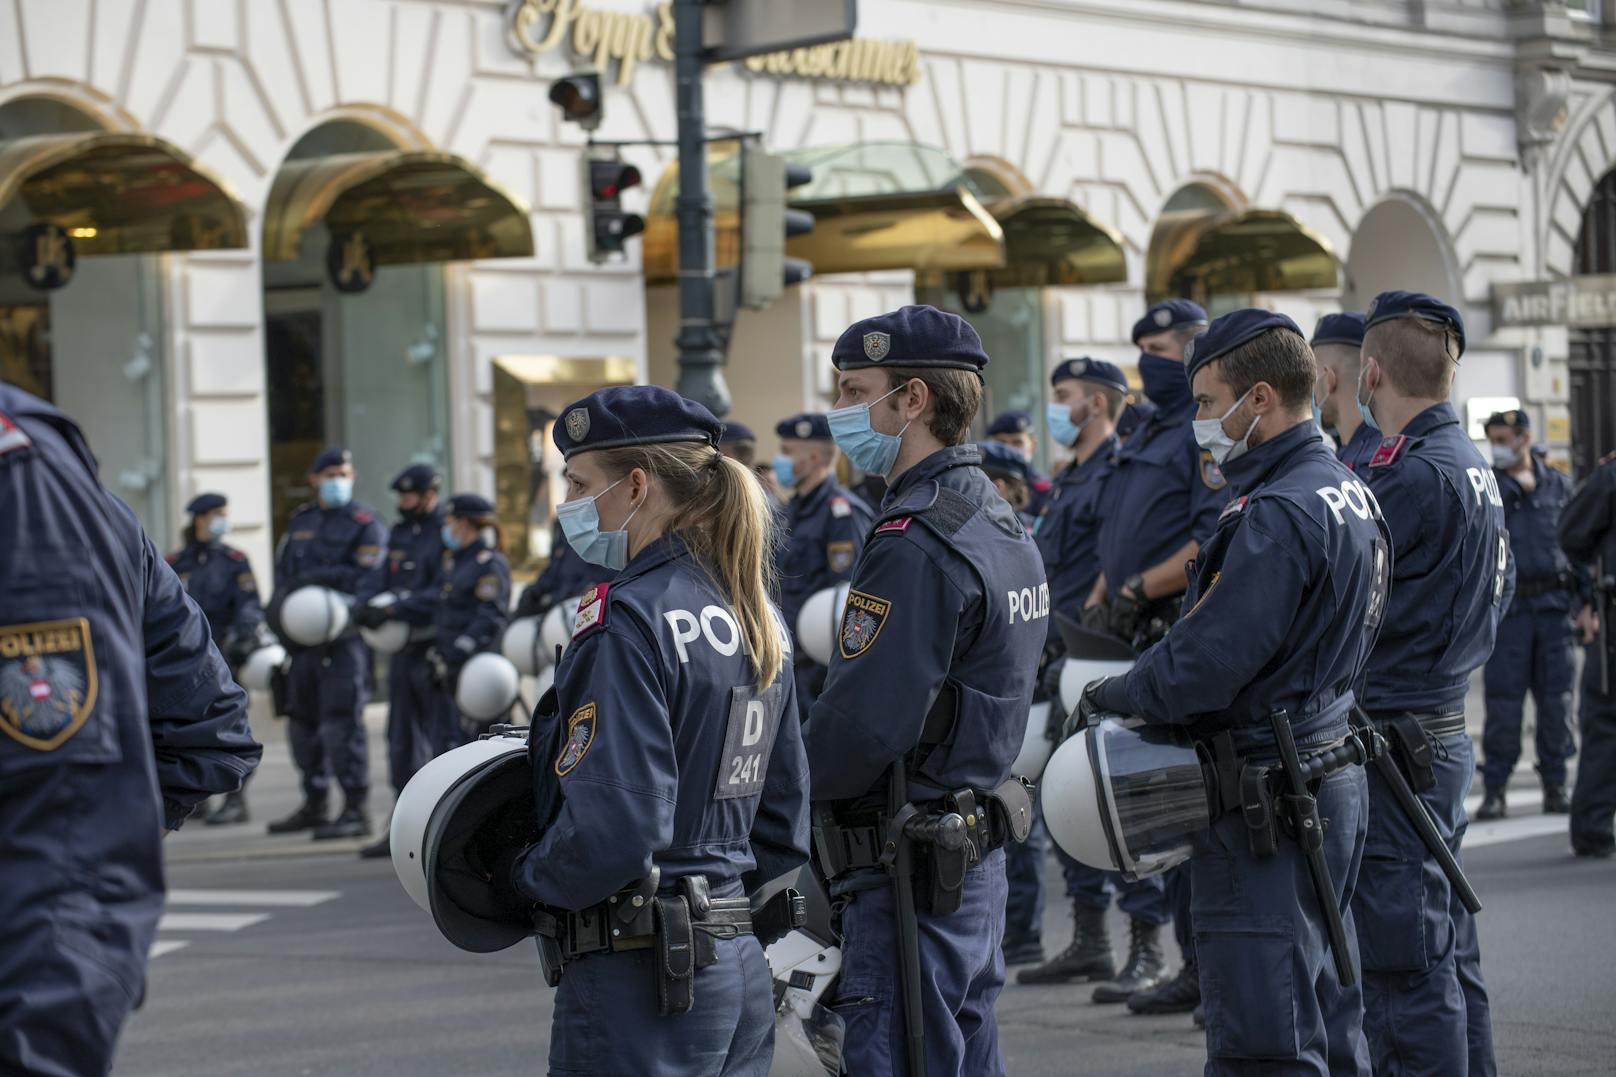 Polizei-Einsatz (Archivfoto vom Samstag, 31.10.2020)